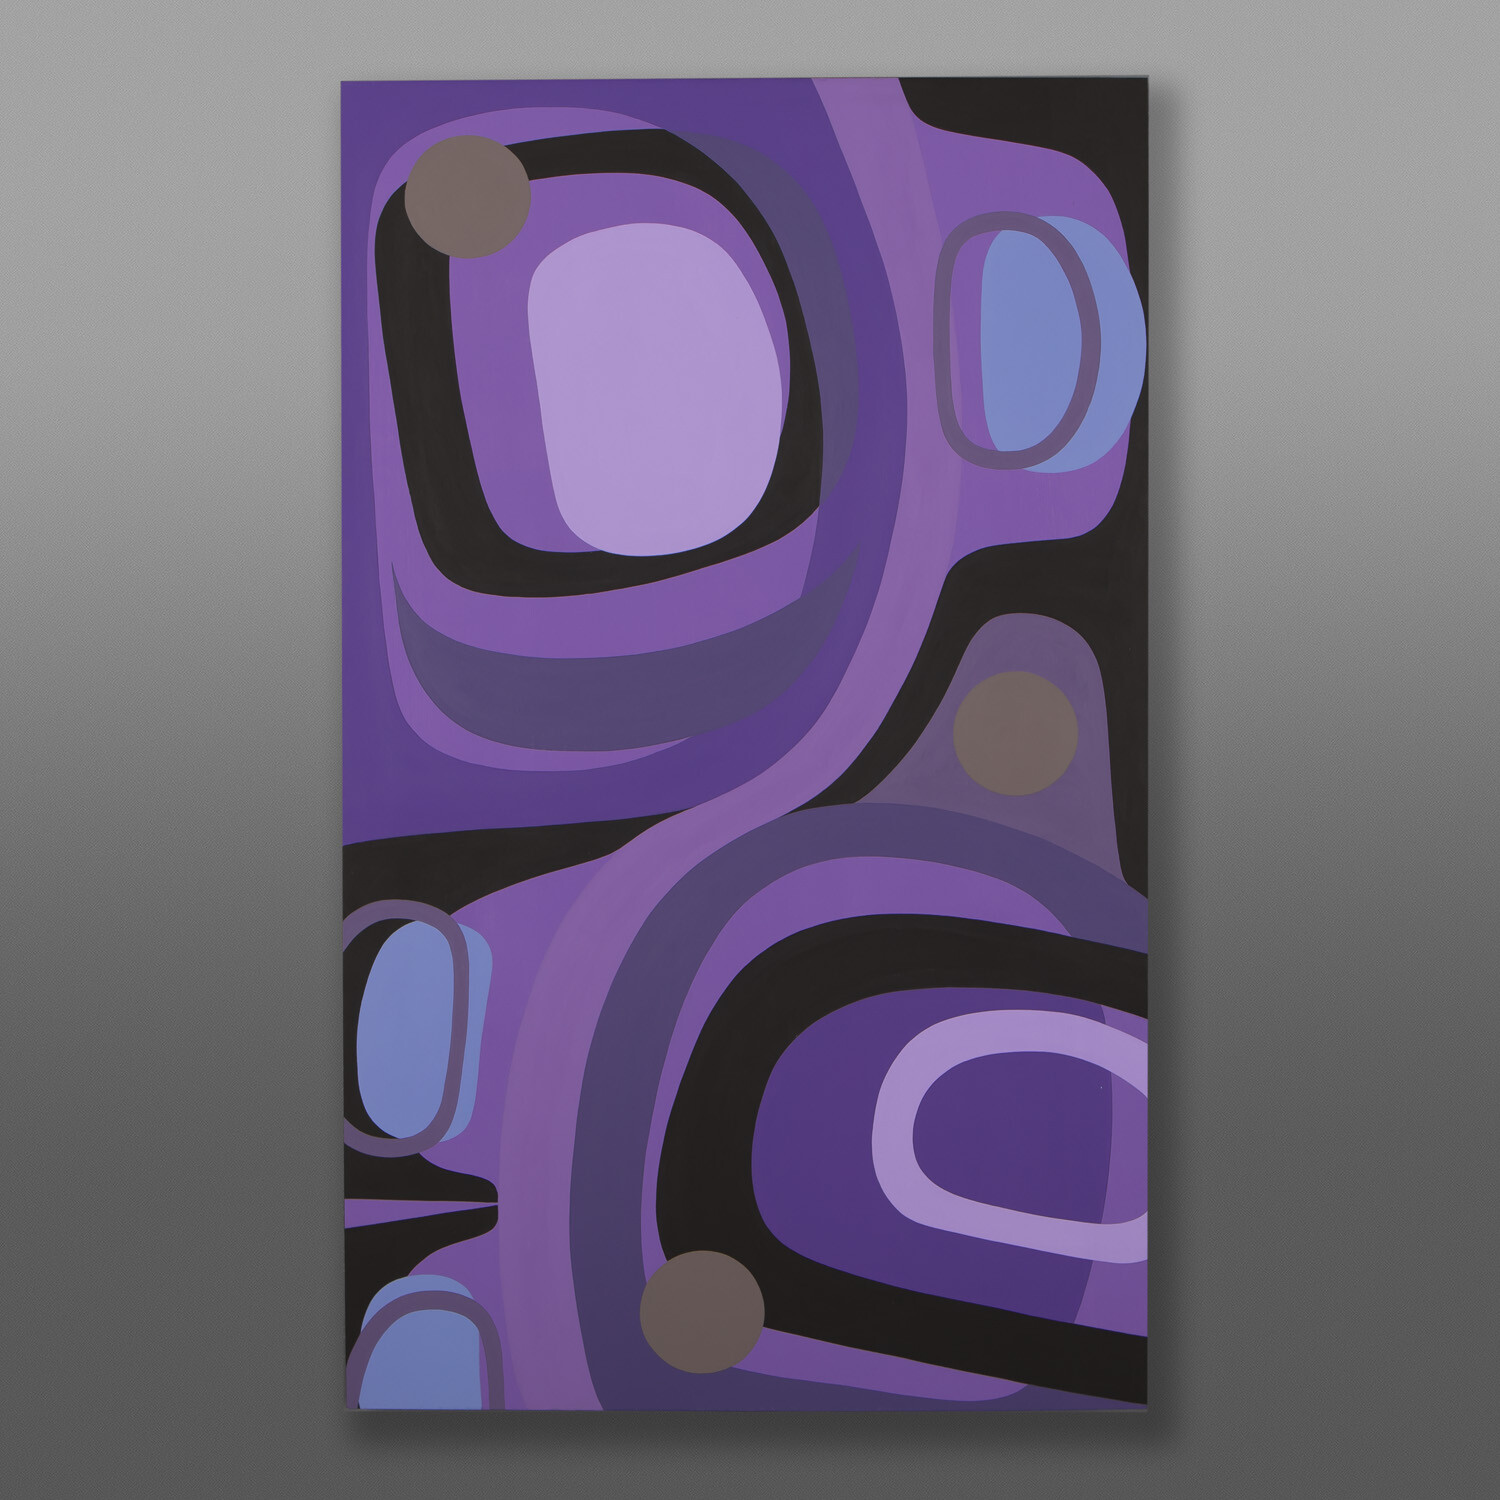 Purple Haze
Steve Smith - Dla'kwagila
Oweekeno
Acrylic on birch panel
40" x 24" x 1½"
$3800